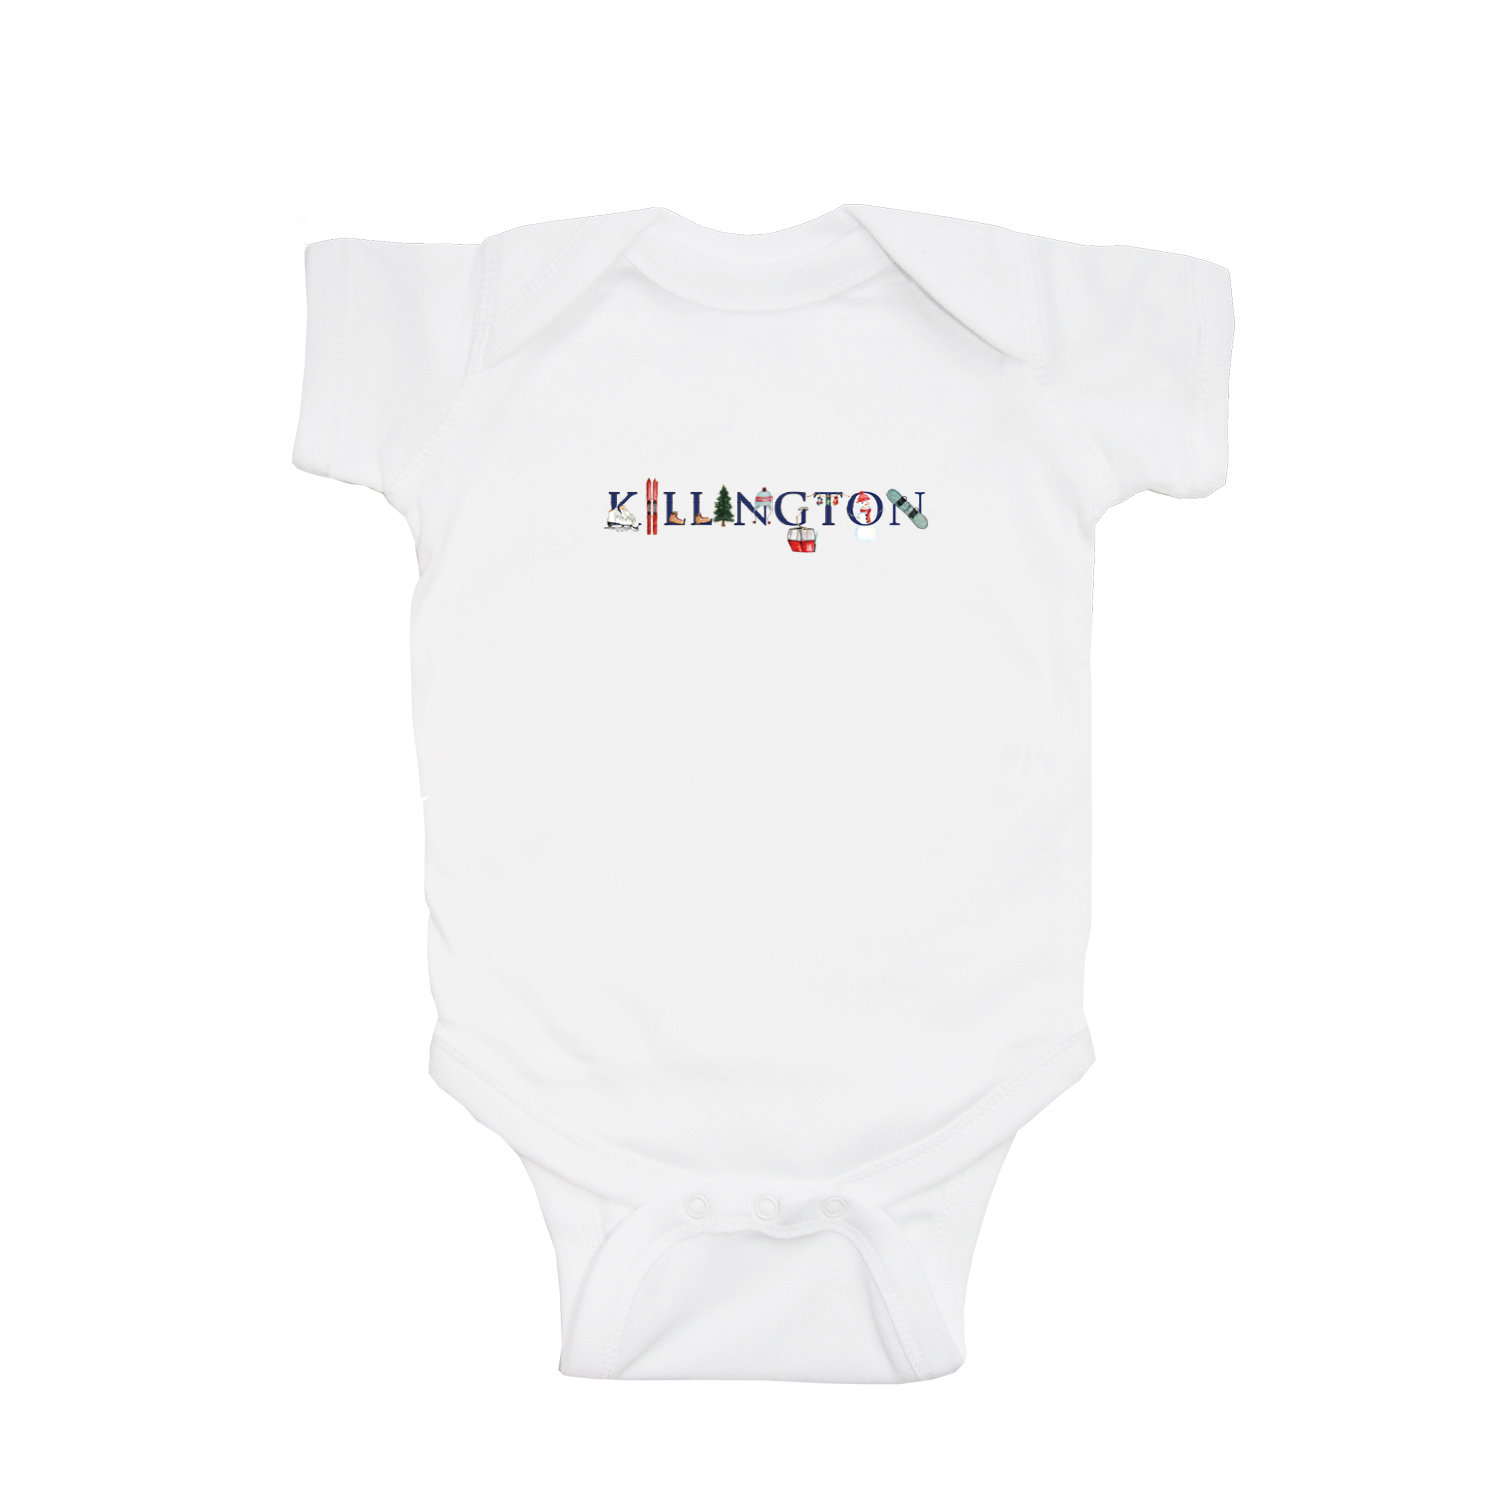 Killington baby snap up short sleeve